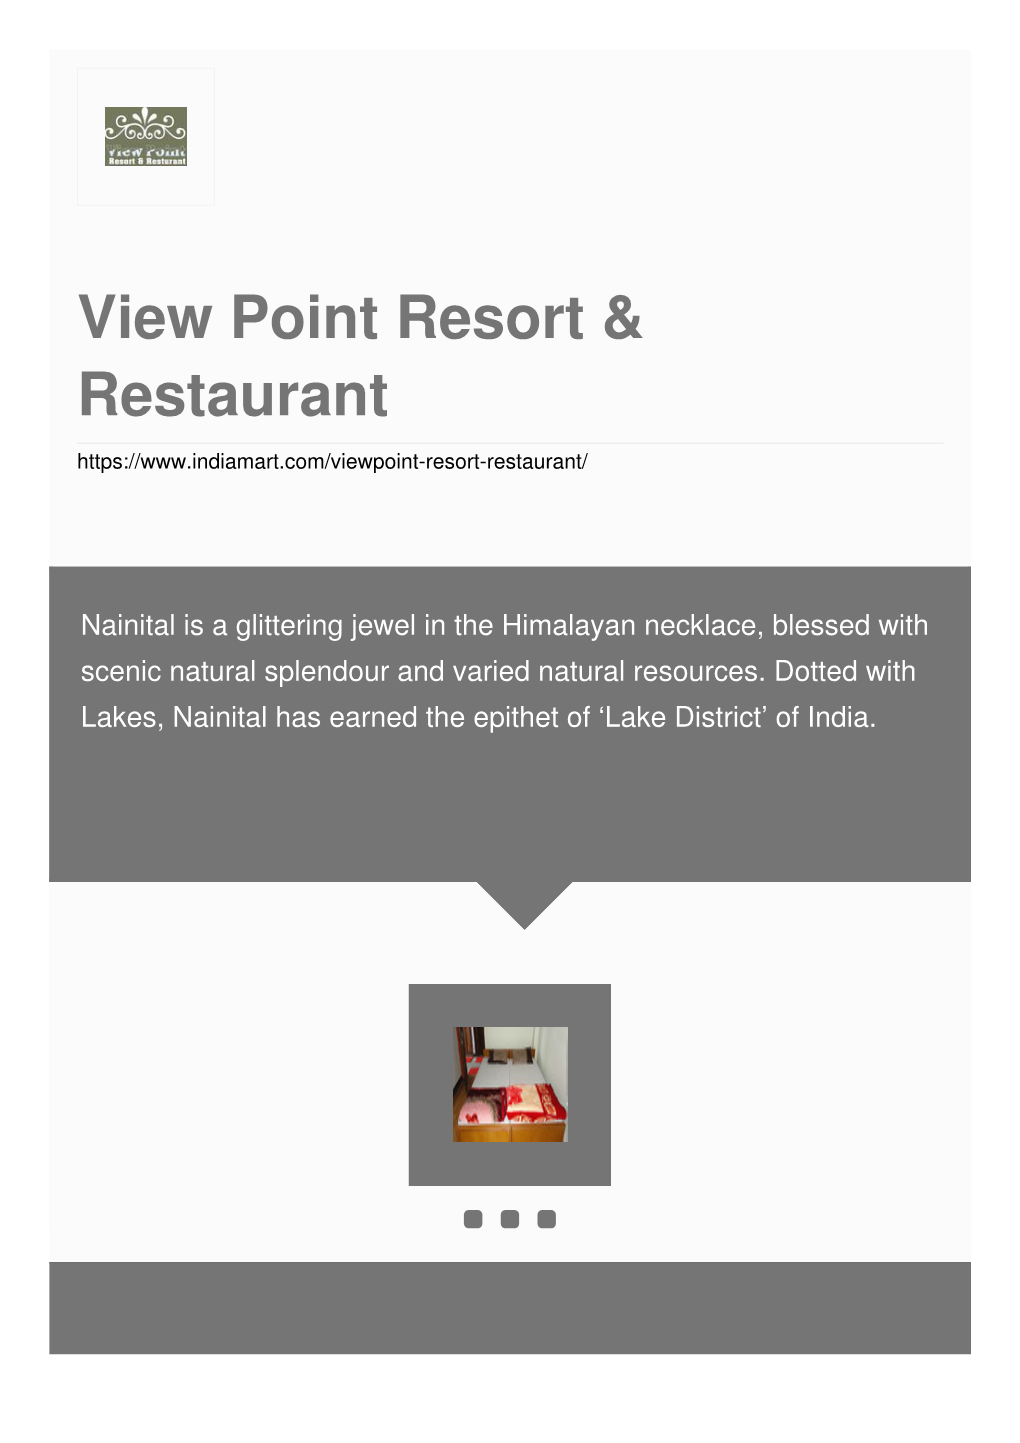 View Point Resort & Restaurant